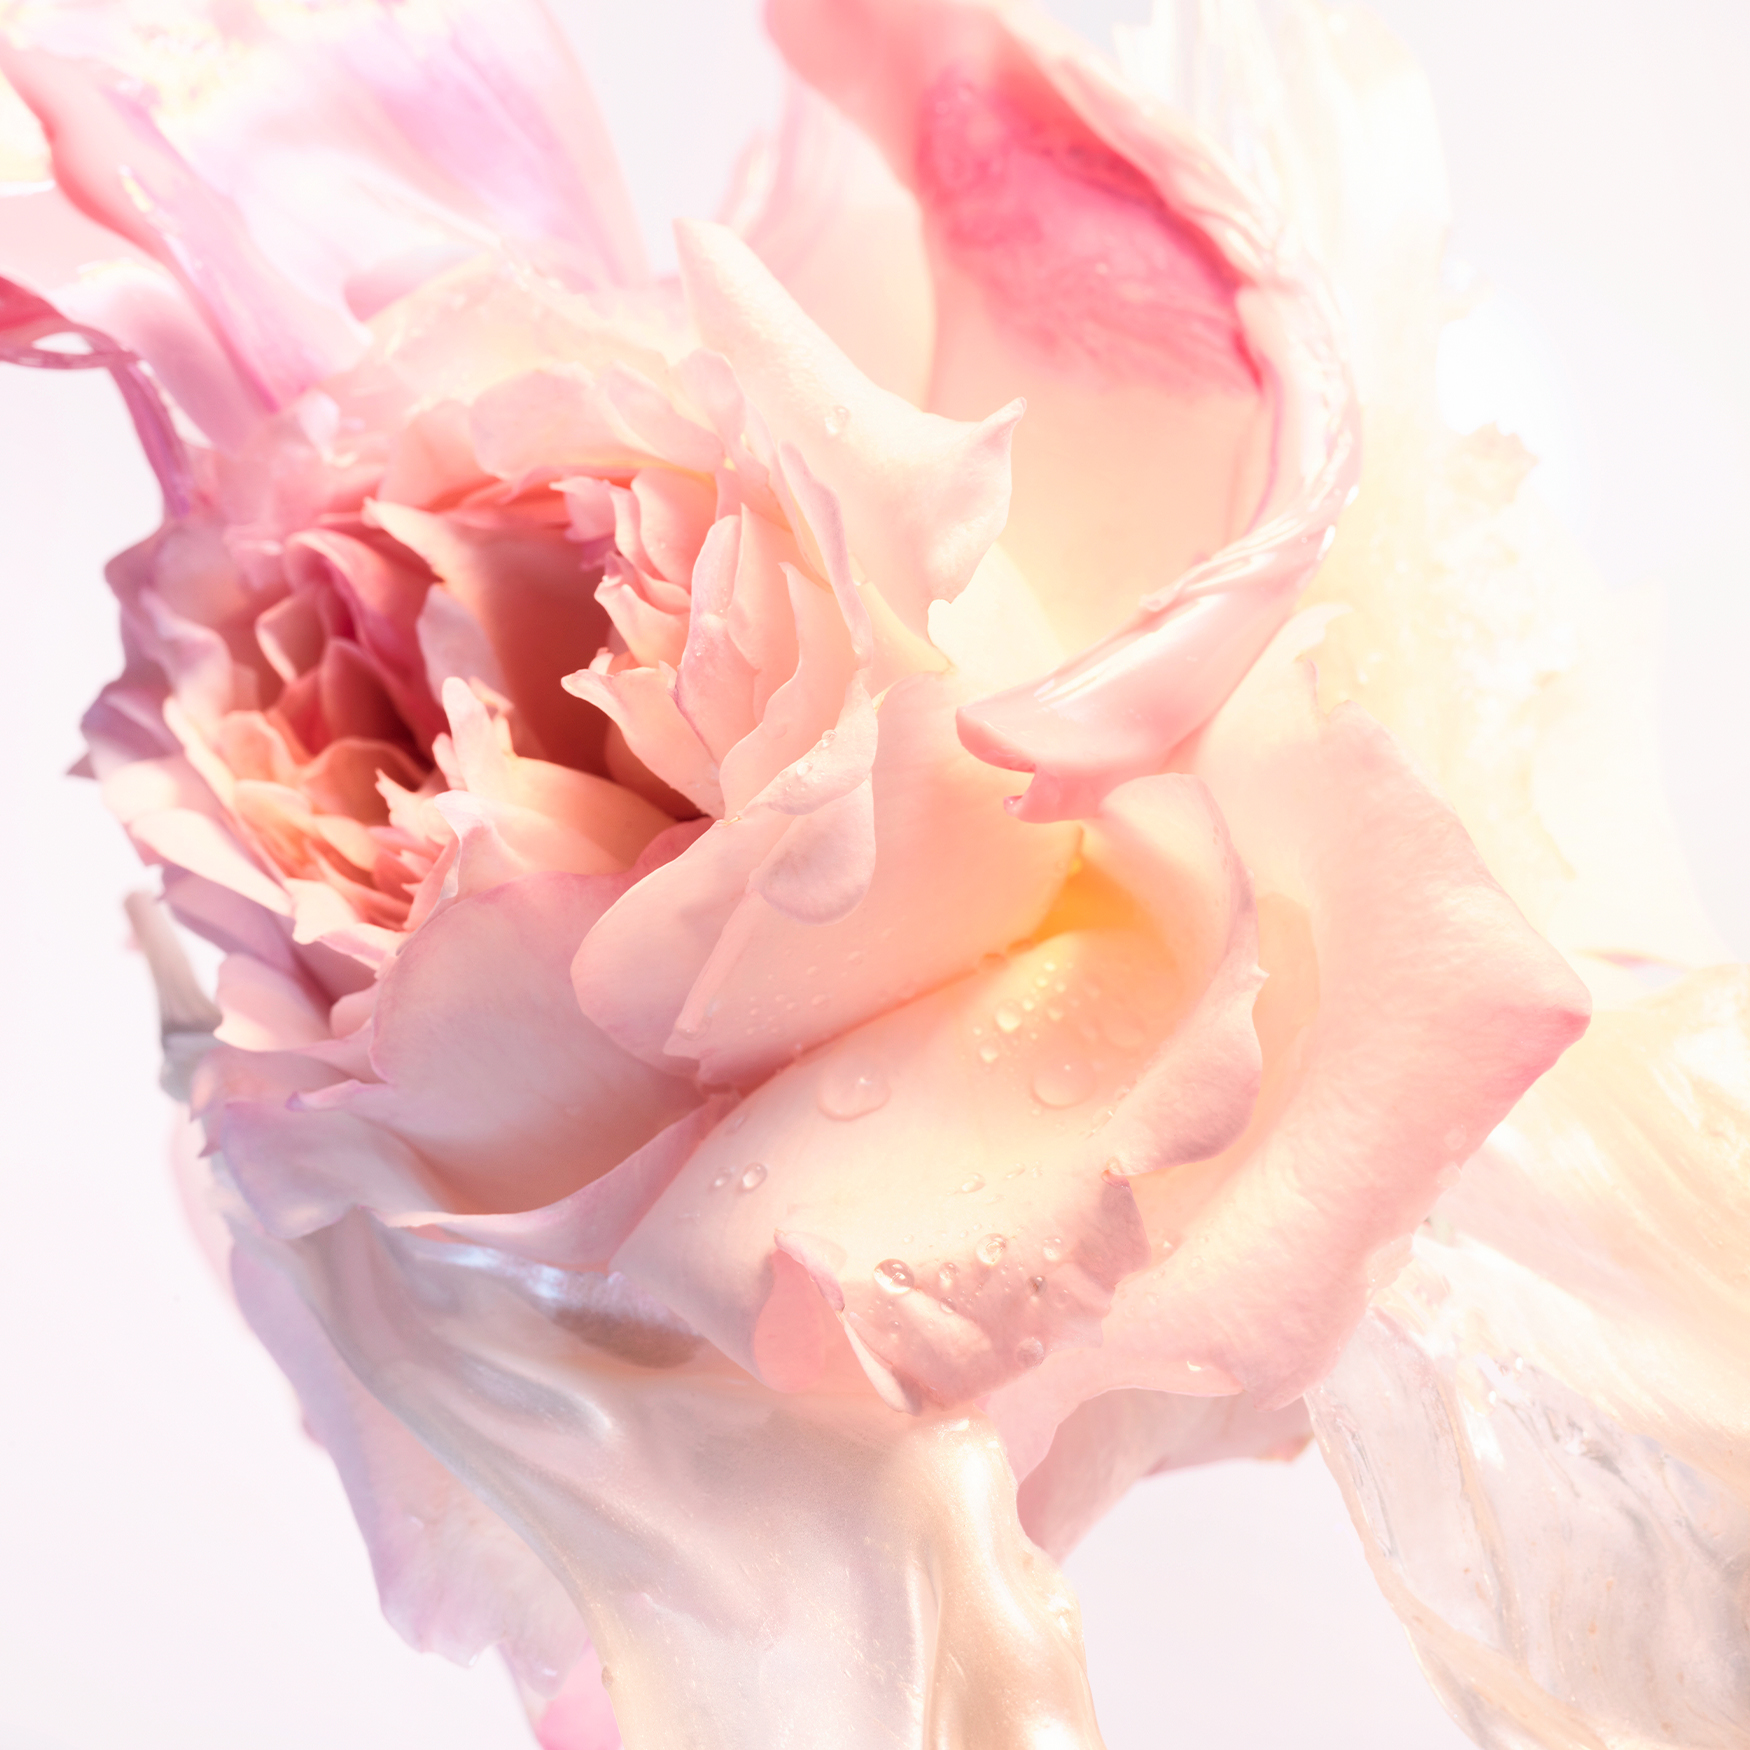 Rose goldea blossom delight